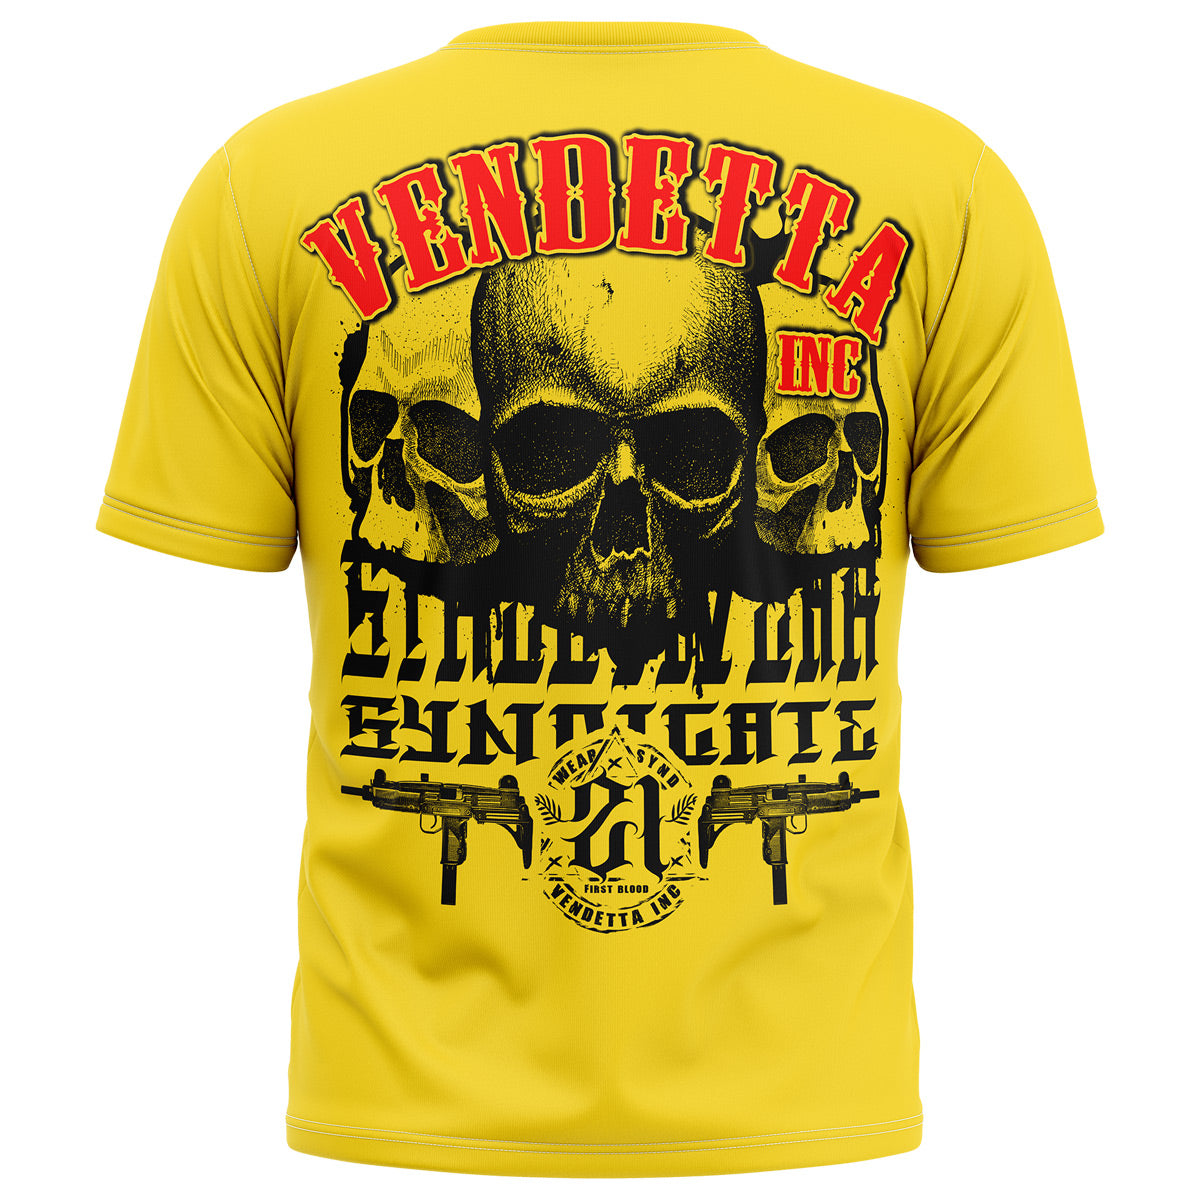 Vendetta Inc. Shirt gelb threes Skull